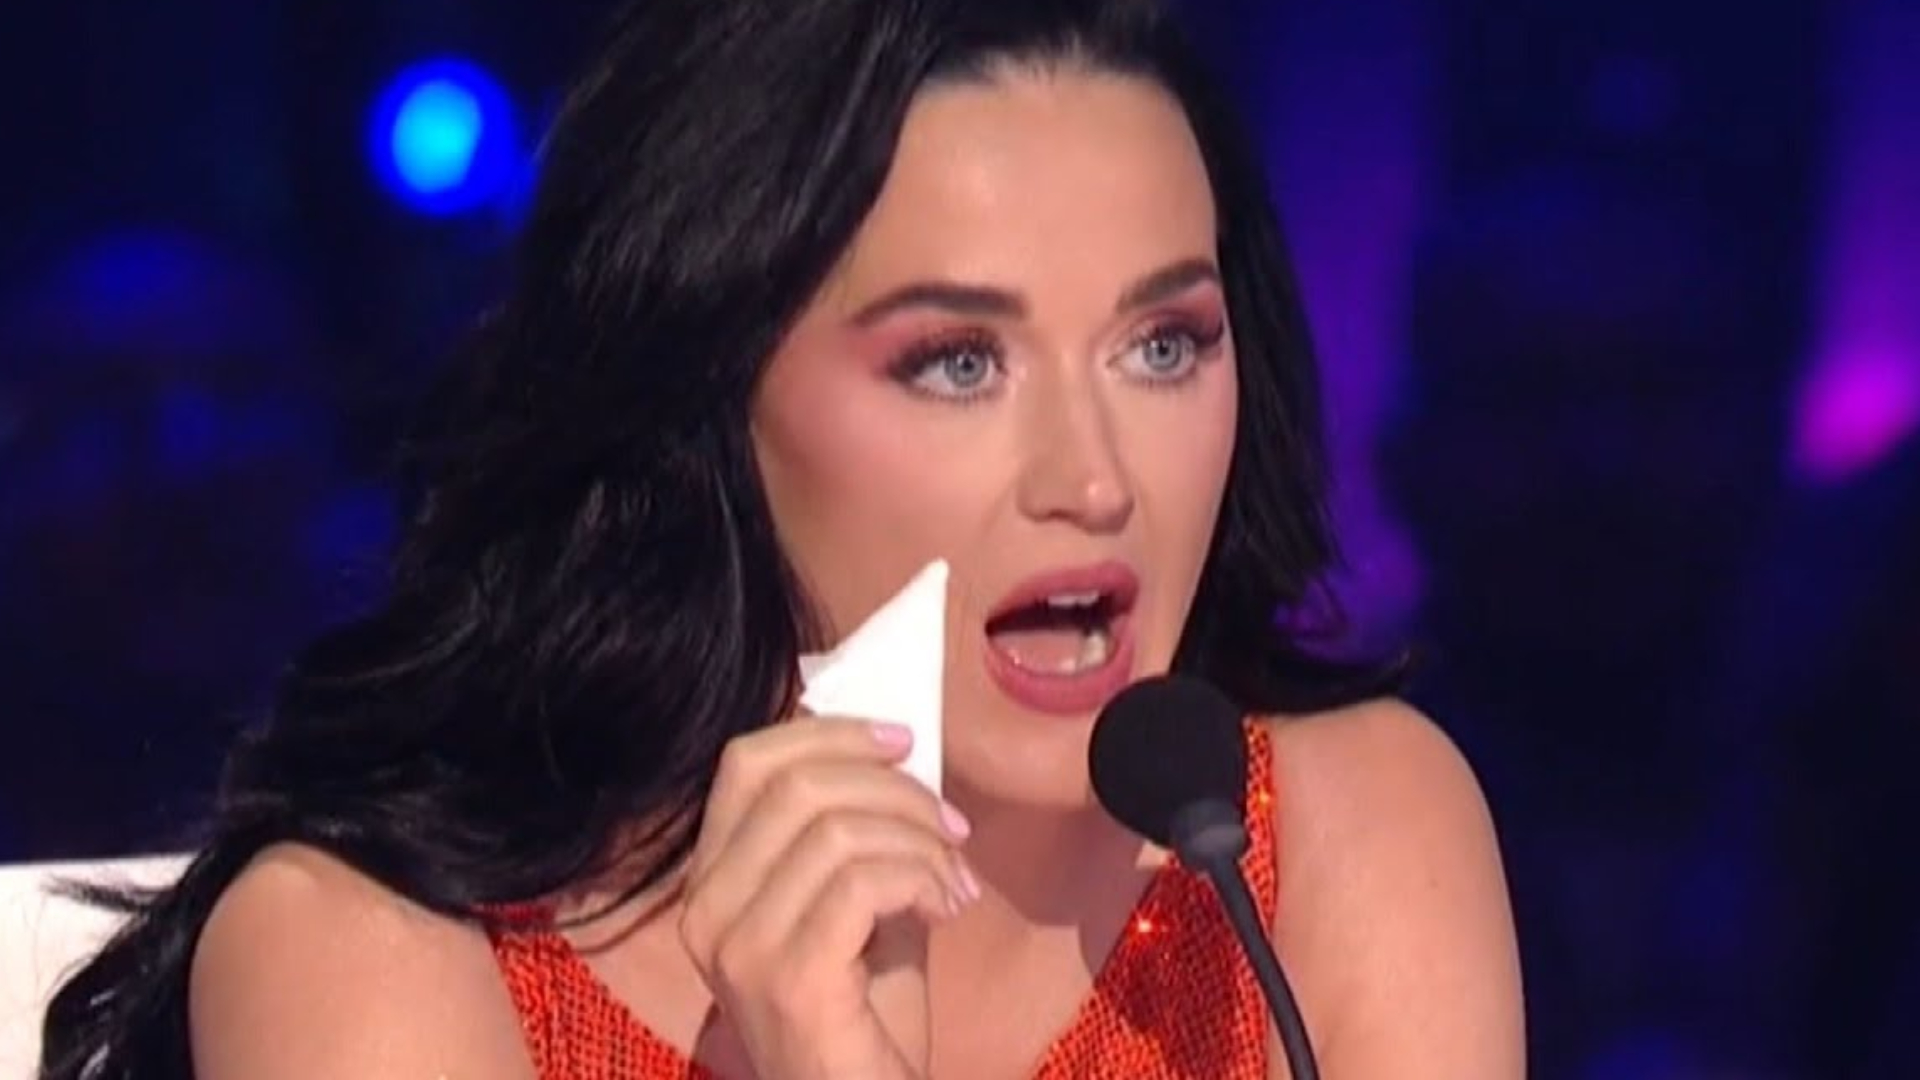 Katy Perry quer sair do “American Idol” e reclama que foi “jogada aos leões” pelos produtores, diz site